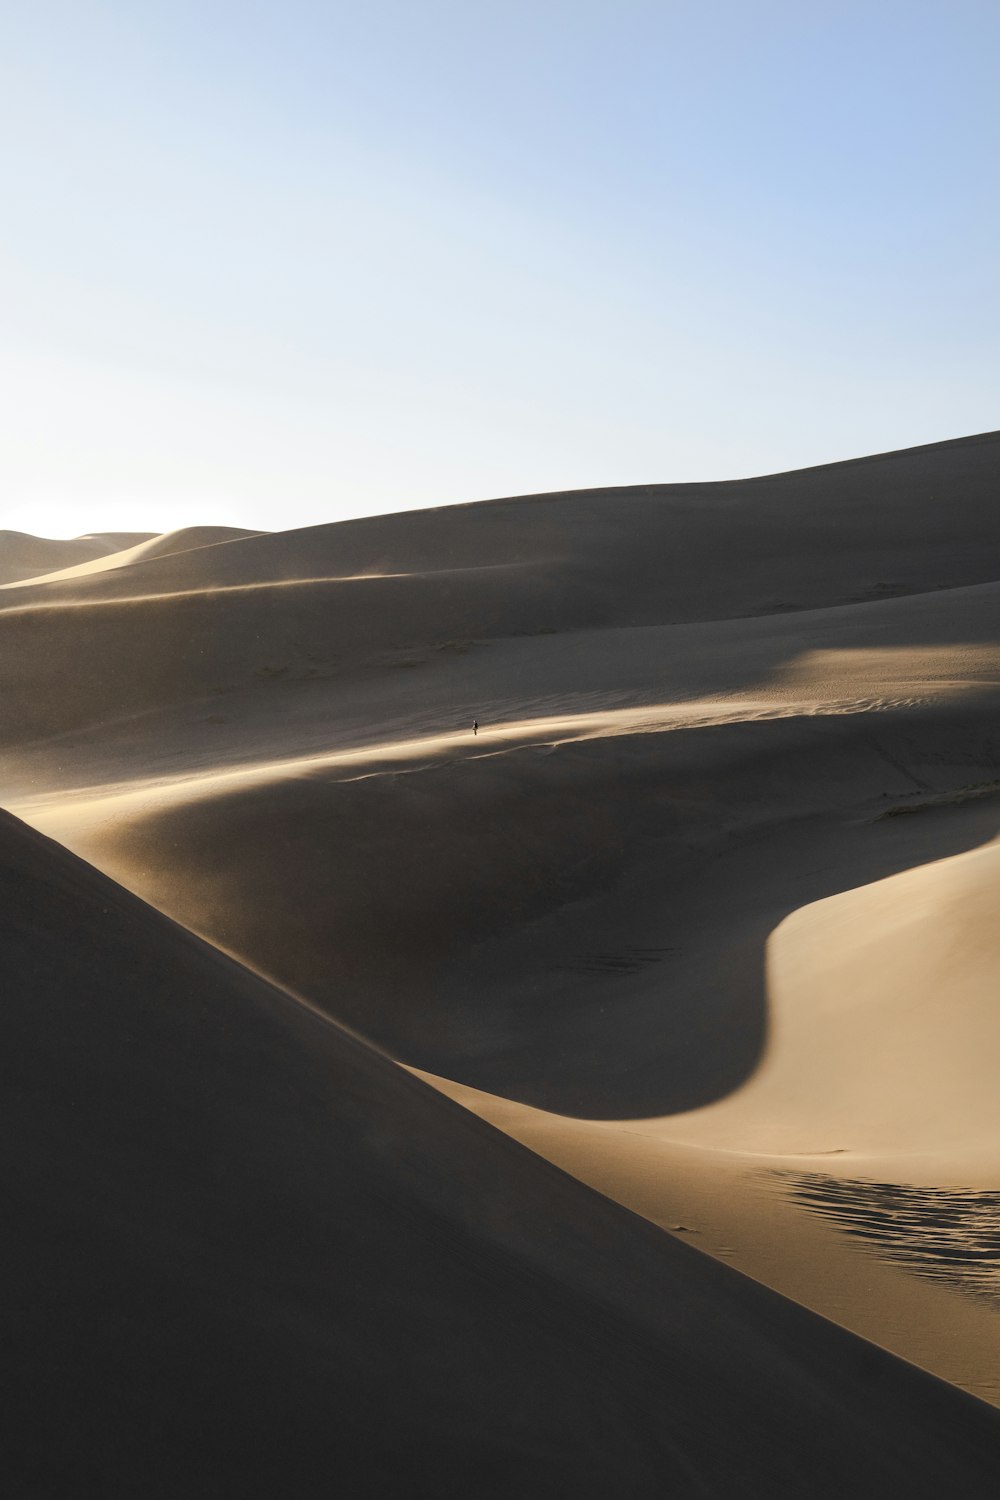 Photographie de landscsape de champ désertique